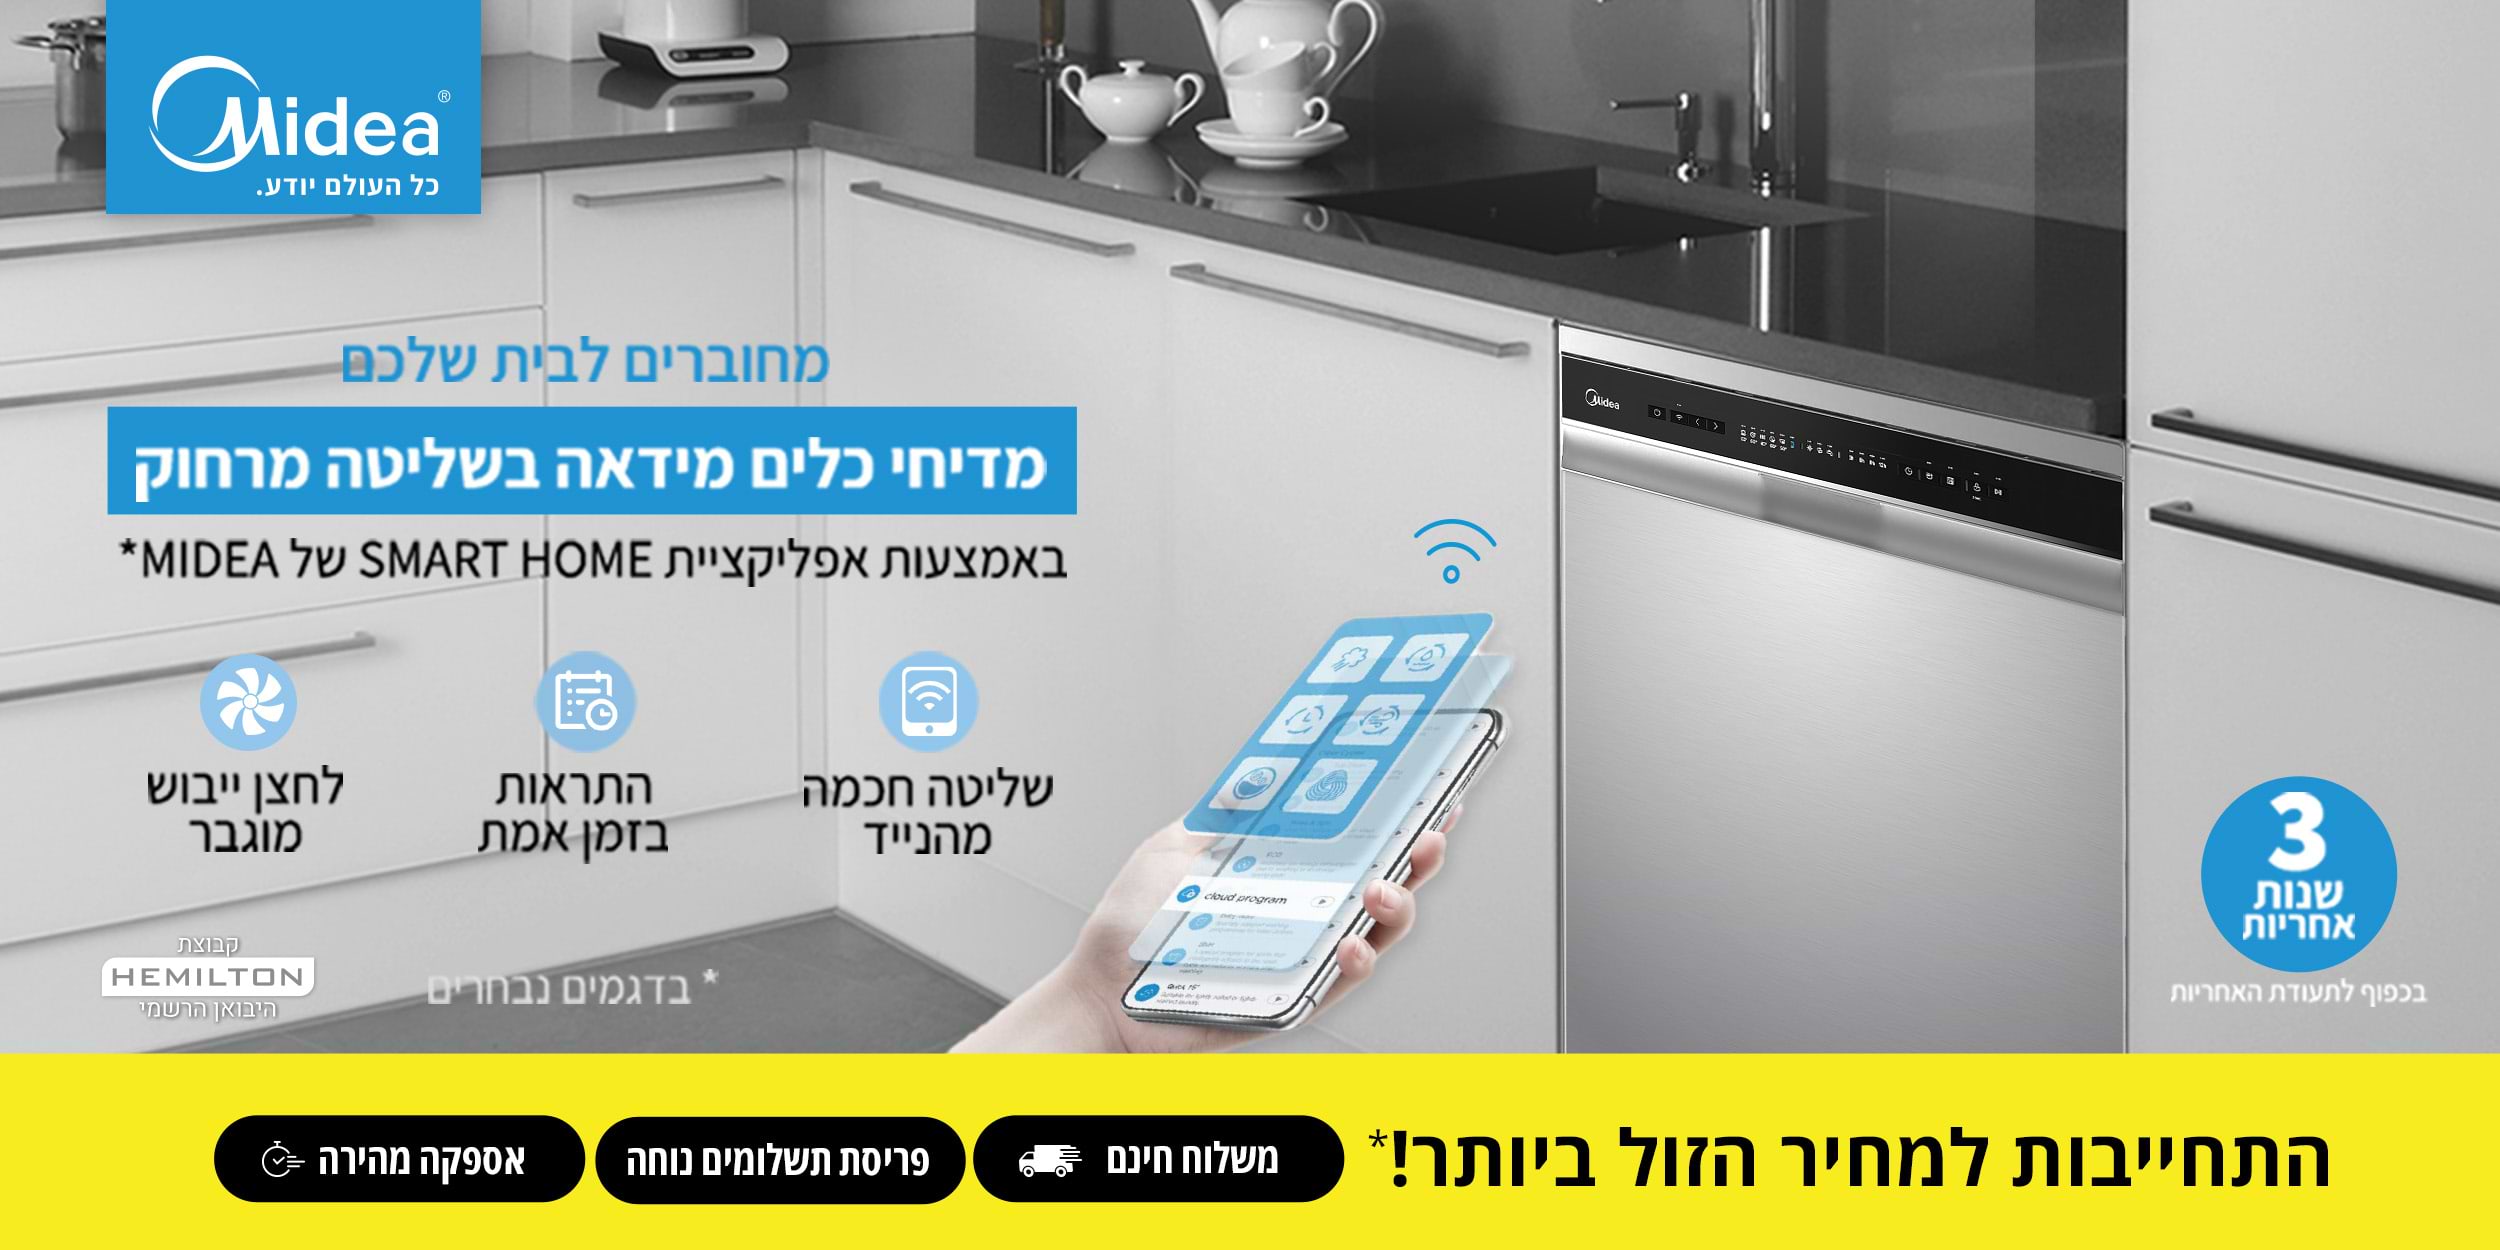 מחוברים לבית שלכם מדיחי כלים מידאה בשליטה מרחוק באמצעות אפליקציית Smart Home של Midea* *בדגמים הנבחרים